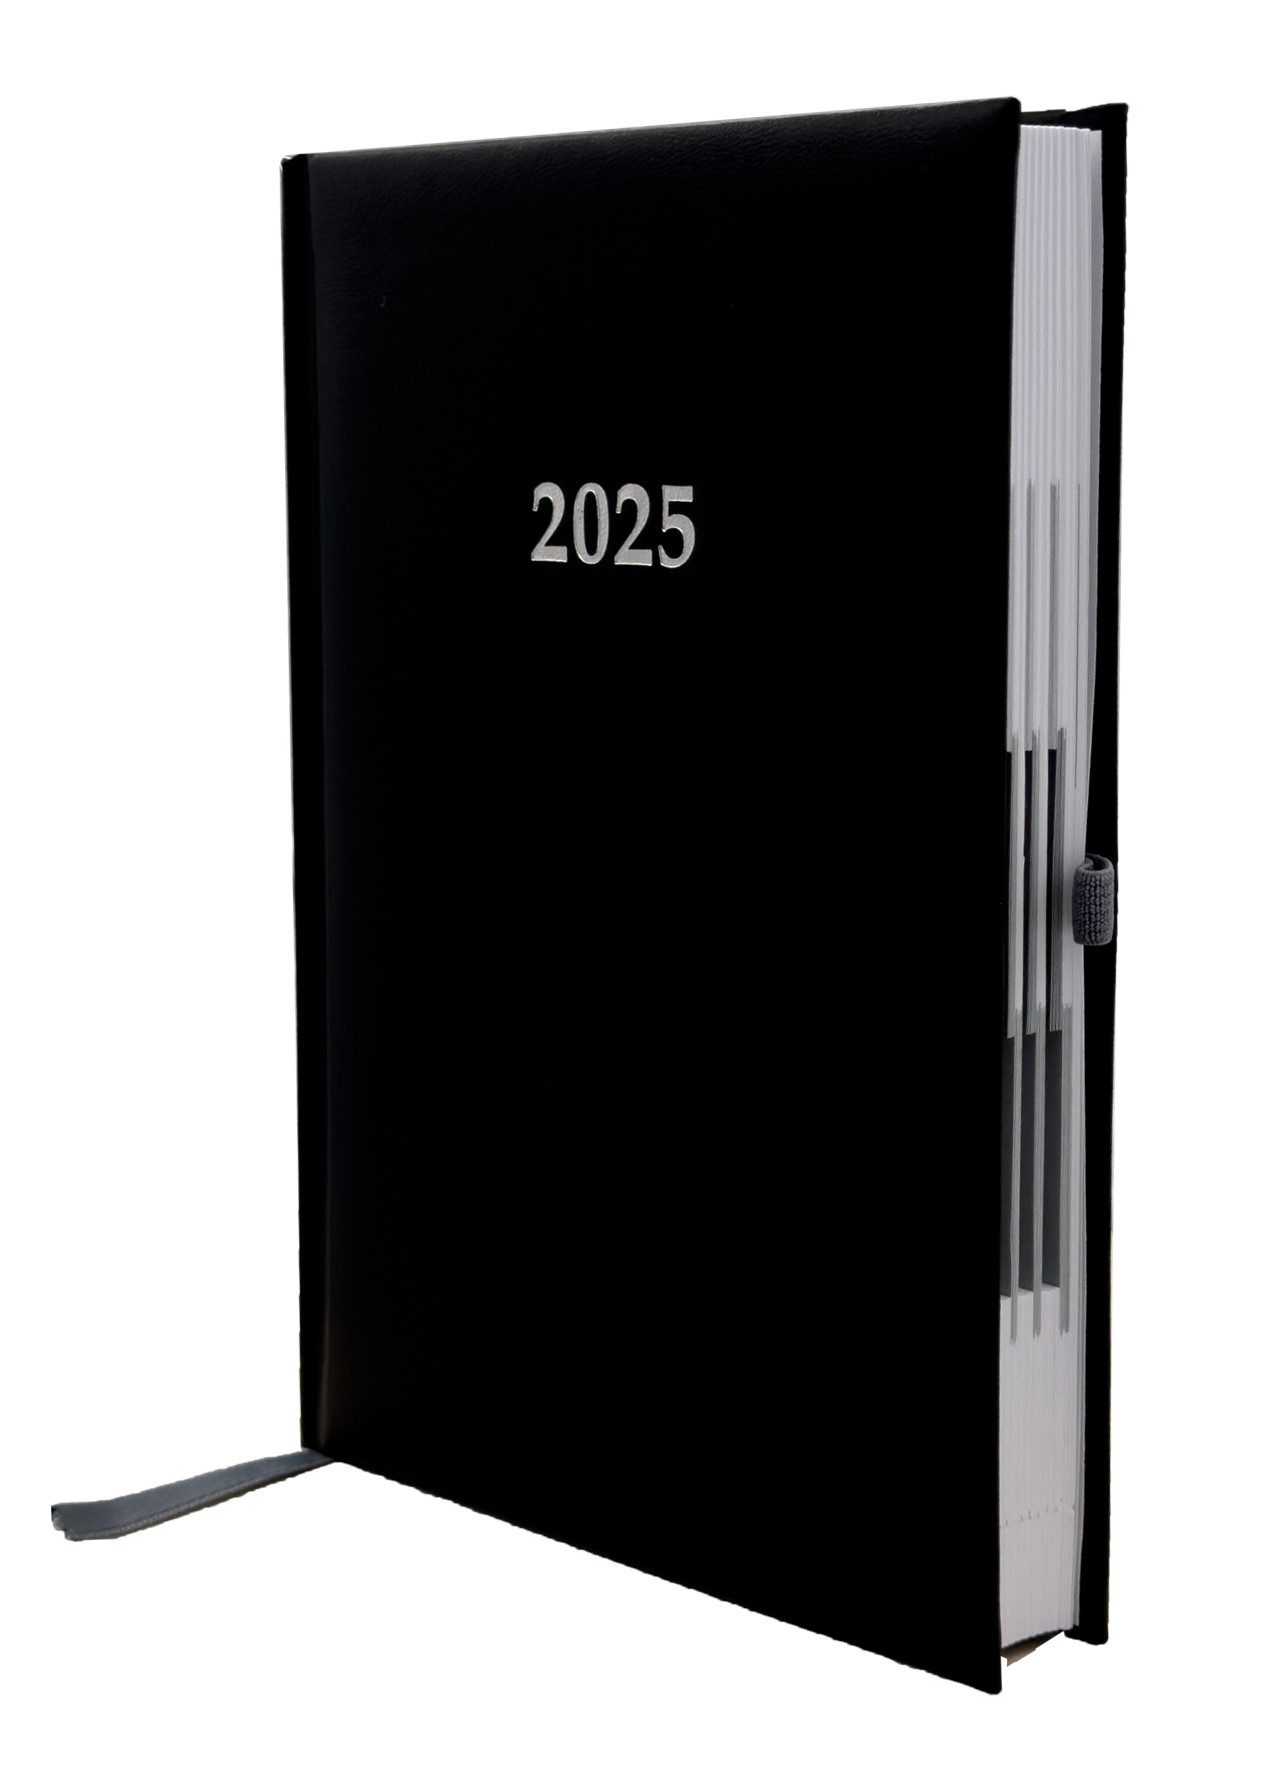 ADINA Buchkalender 2025 ADINA Buchkalender Chefplaner A5 schwarz 1 Tag 1 Seite auch sonnt